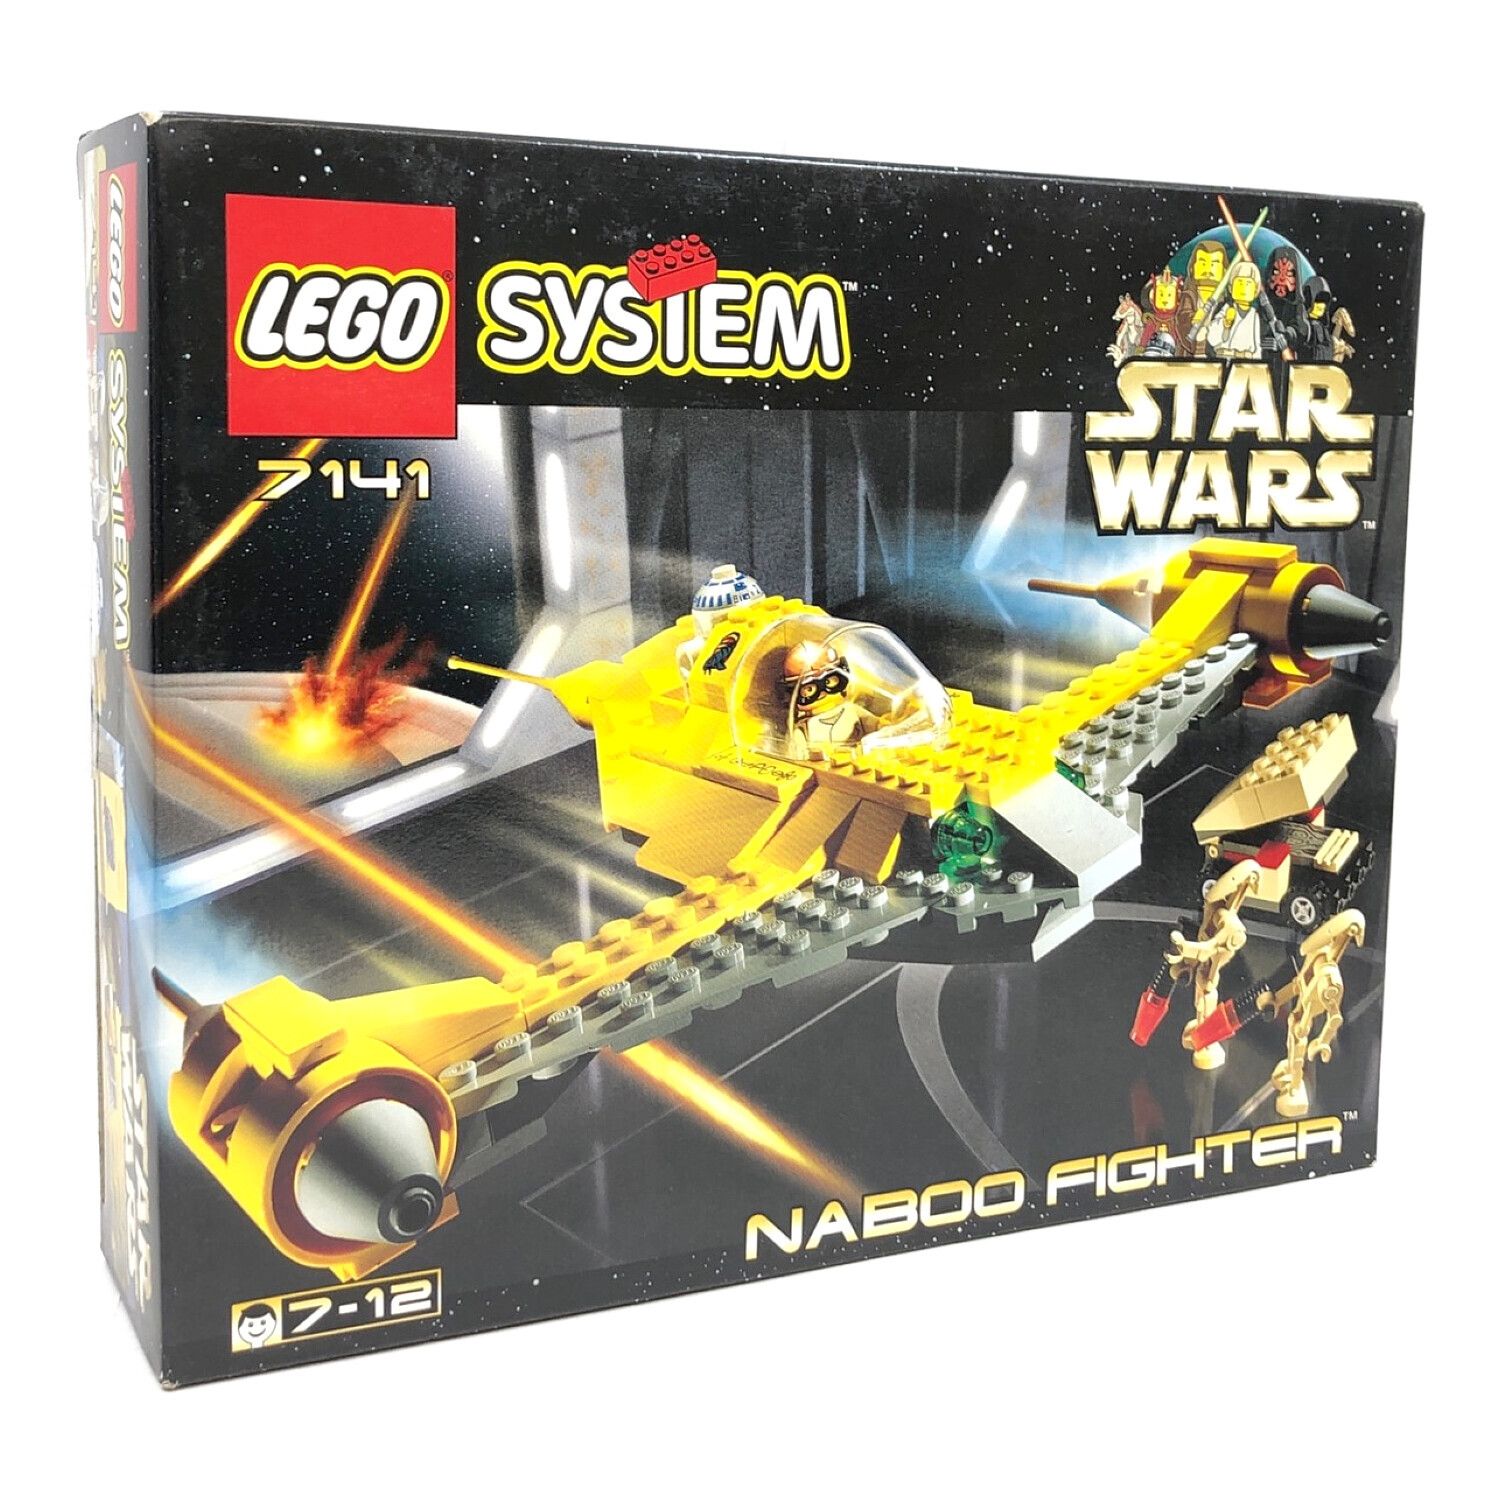 LEGO (レゴ) レゴブロック レゴスターウォーズシリーズ Naboo Fighter